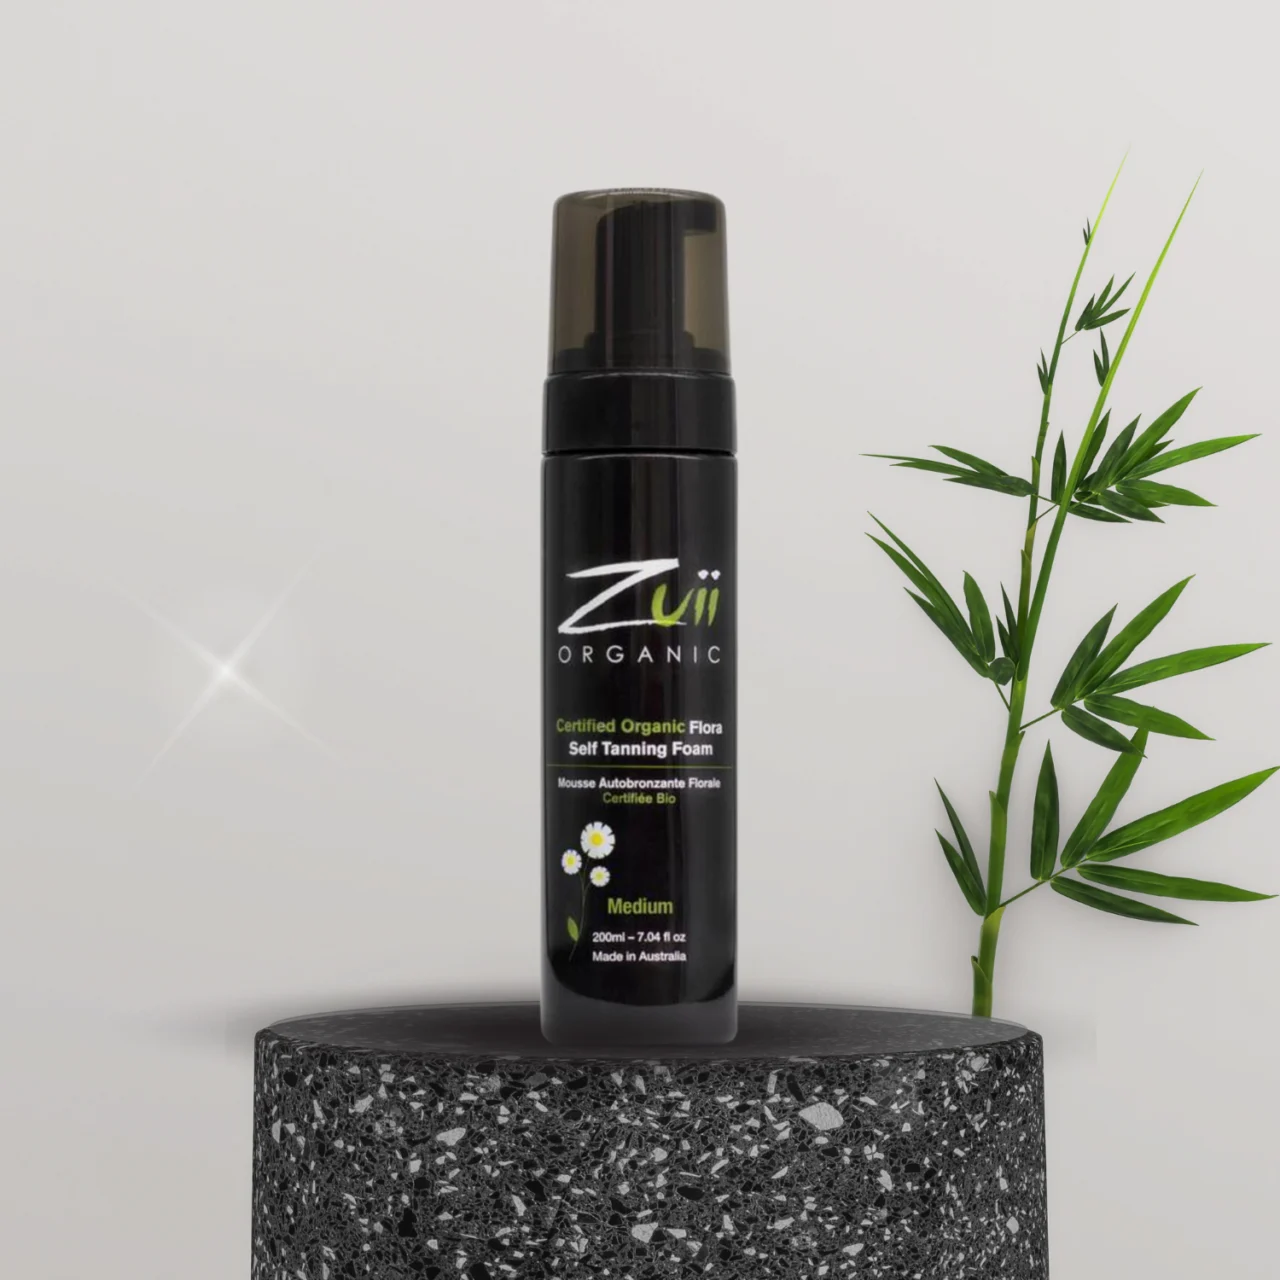 En flaske Zuii økologisk selvbruner mousse medium tilbud ved siden af en bambusplante, der giver en naturlig plejeoplevelse.